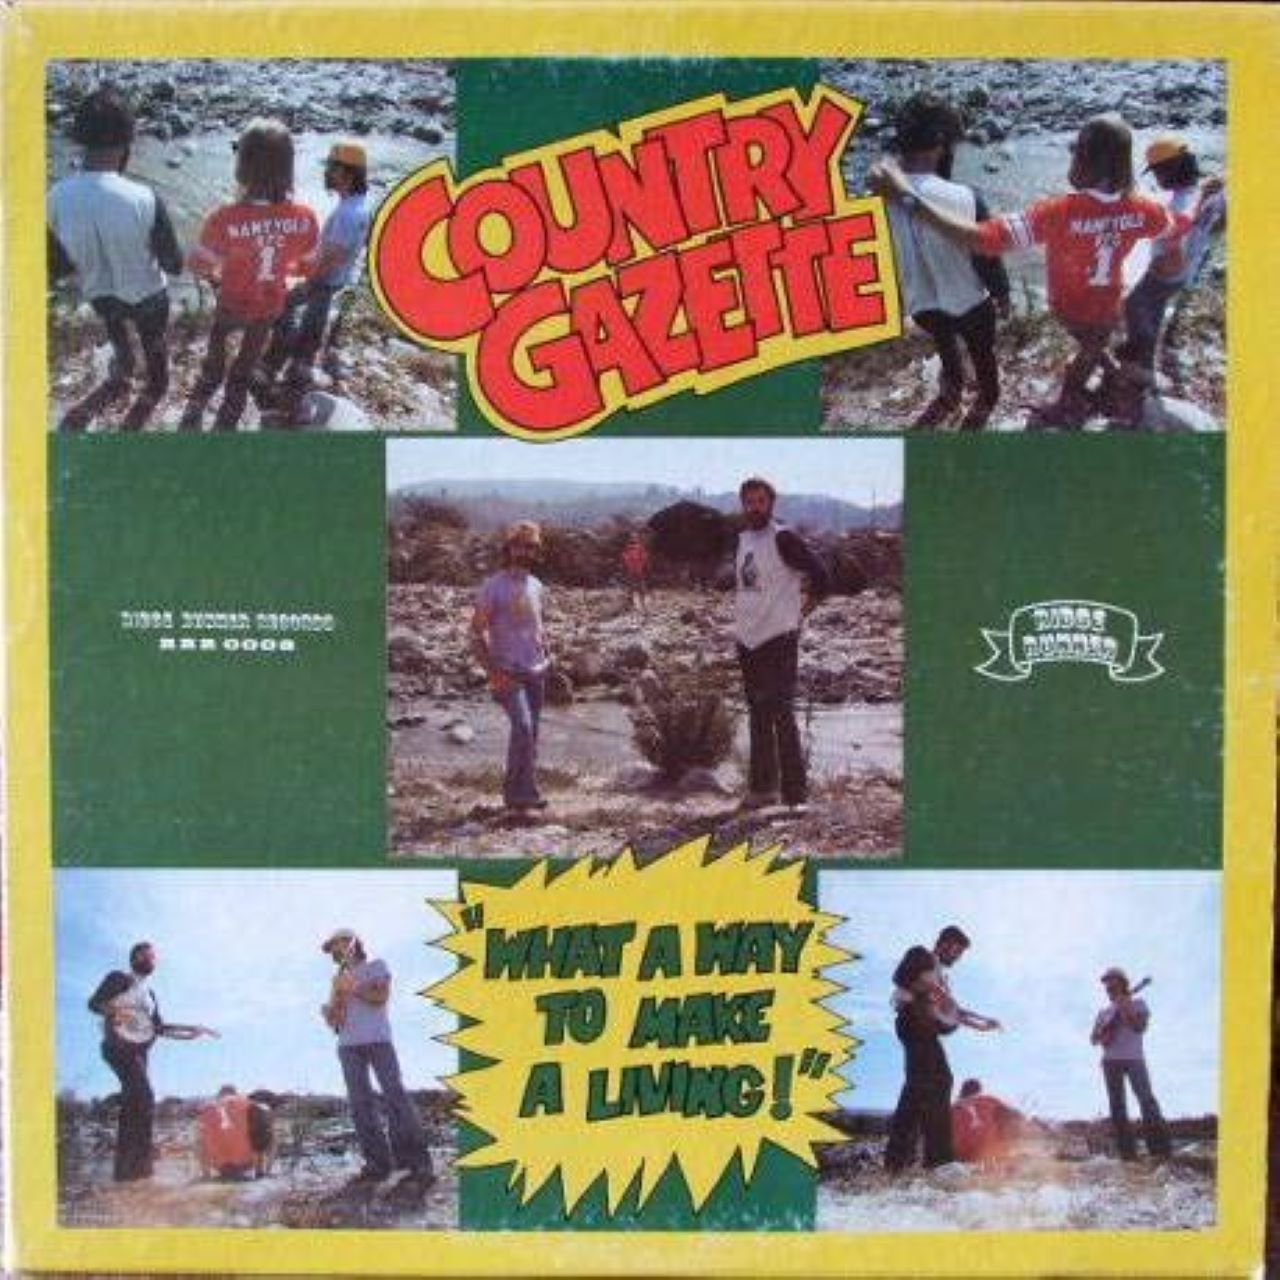 Country Gazette - What A Way To Make A Living cover album